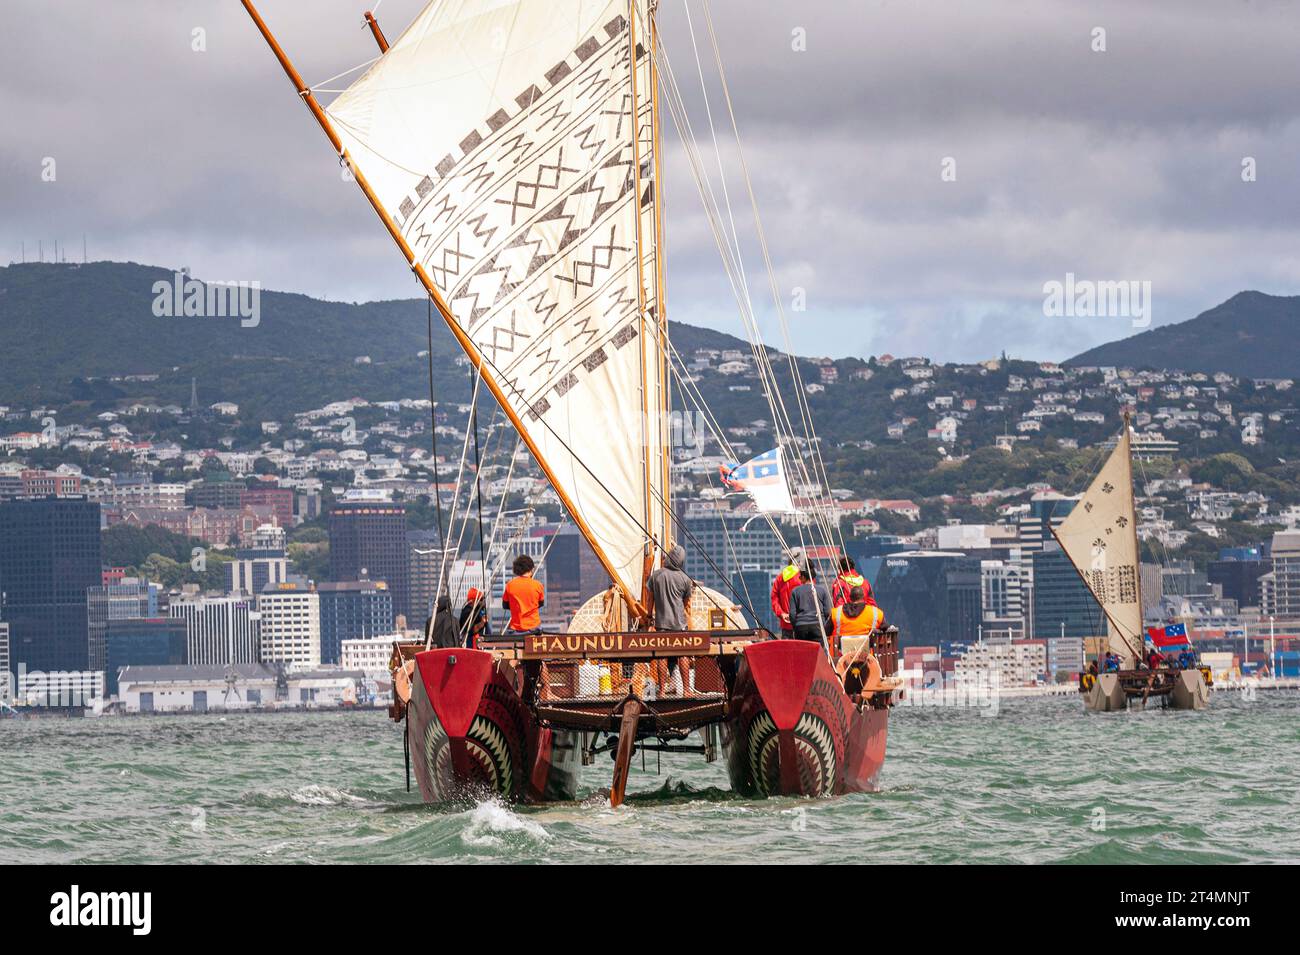 Traditionnel maori à double coque, waka océanique, ou canoë, Haunui, naviguant sur le port de Wellington Banque D'Images